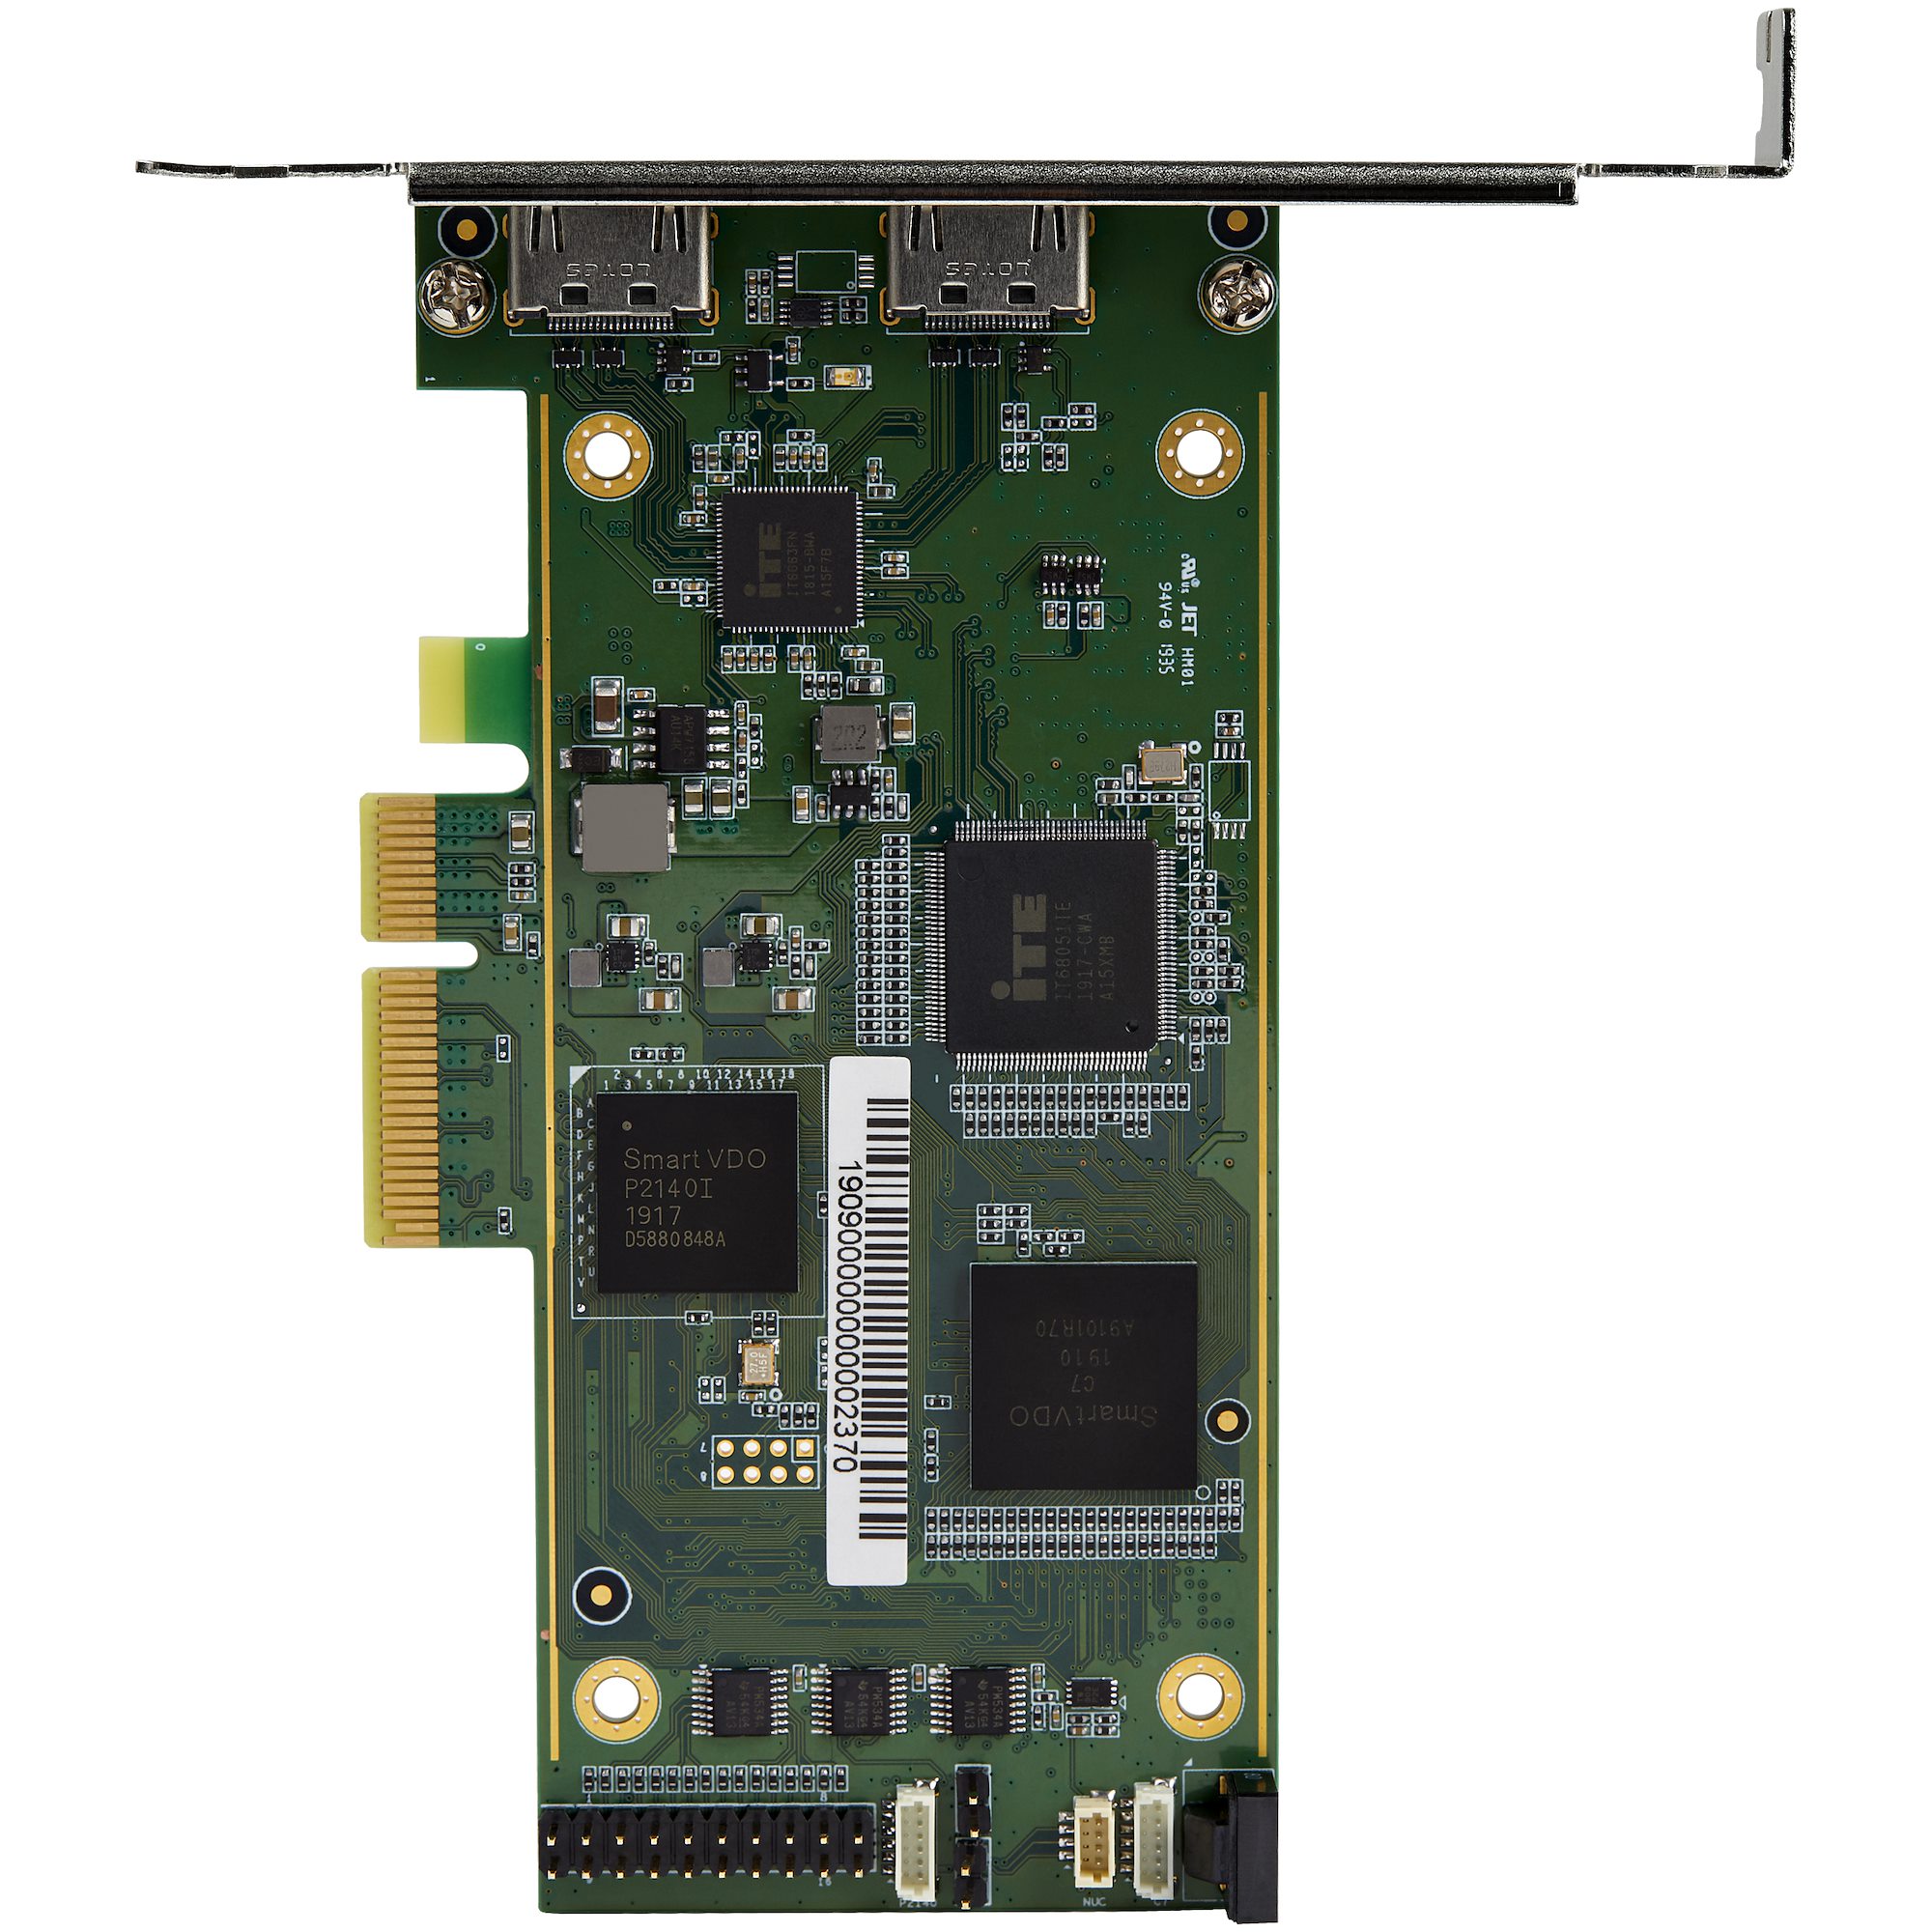 StarTech.com PCIe x1 4GB Graphics Card, DVI, HDMI, VGA Output